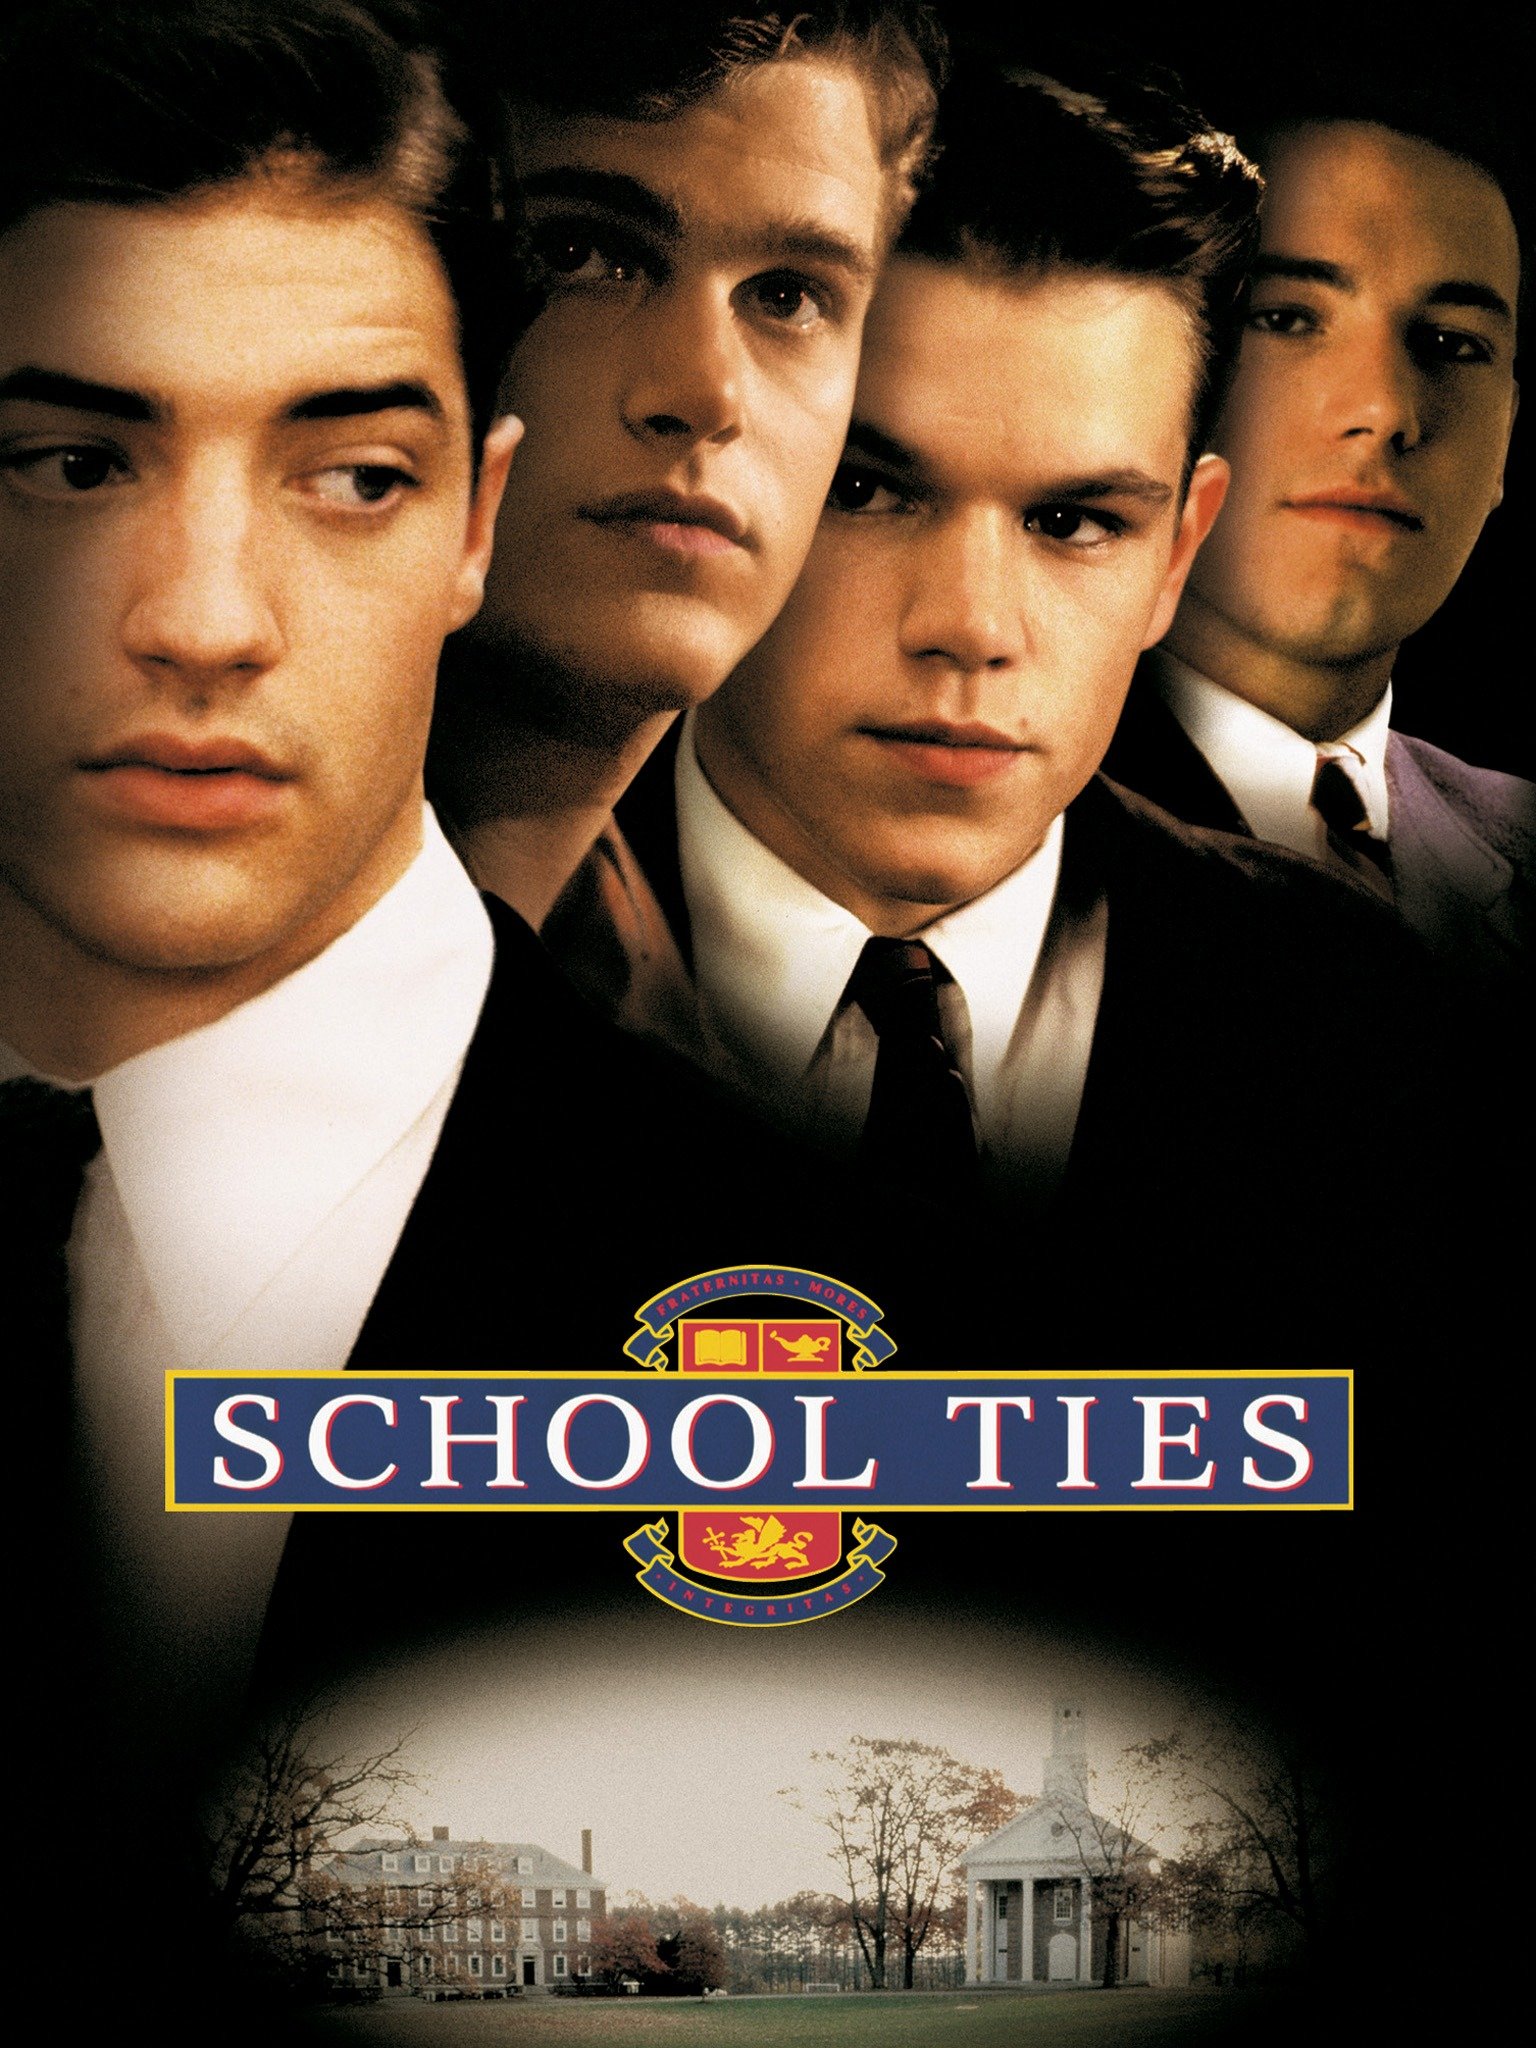 movie review school ties